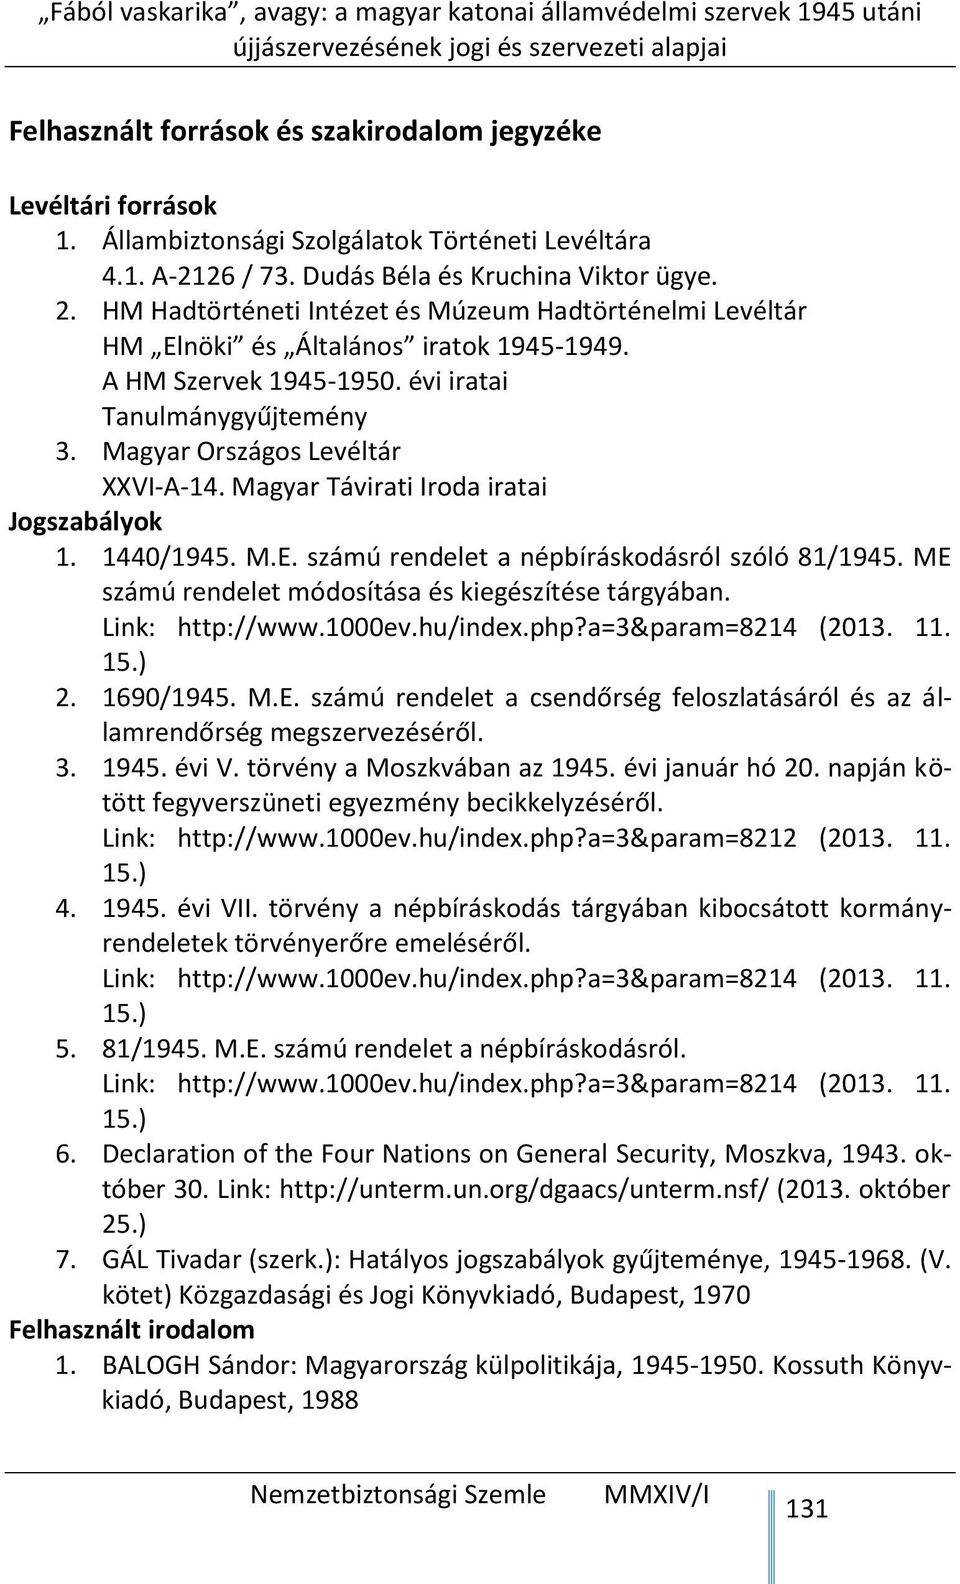 Magyar Távirati Iroda iratai Jogszabályok 1. 1440/1945. M.E. számú rendelet a népbíráskodásról szóló 81/1945. ME számú rendelet módosítása és kiegészítése tárgyában. Link: http://www.1000ev.hu/index.